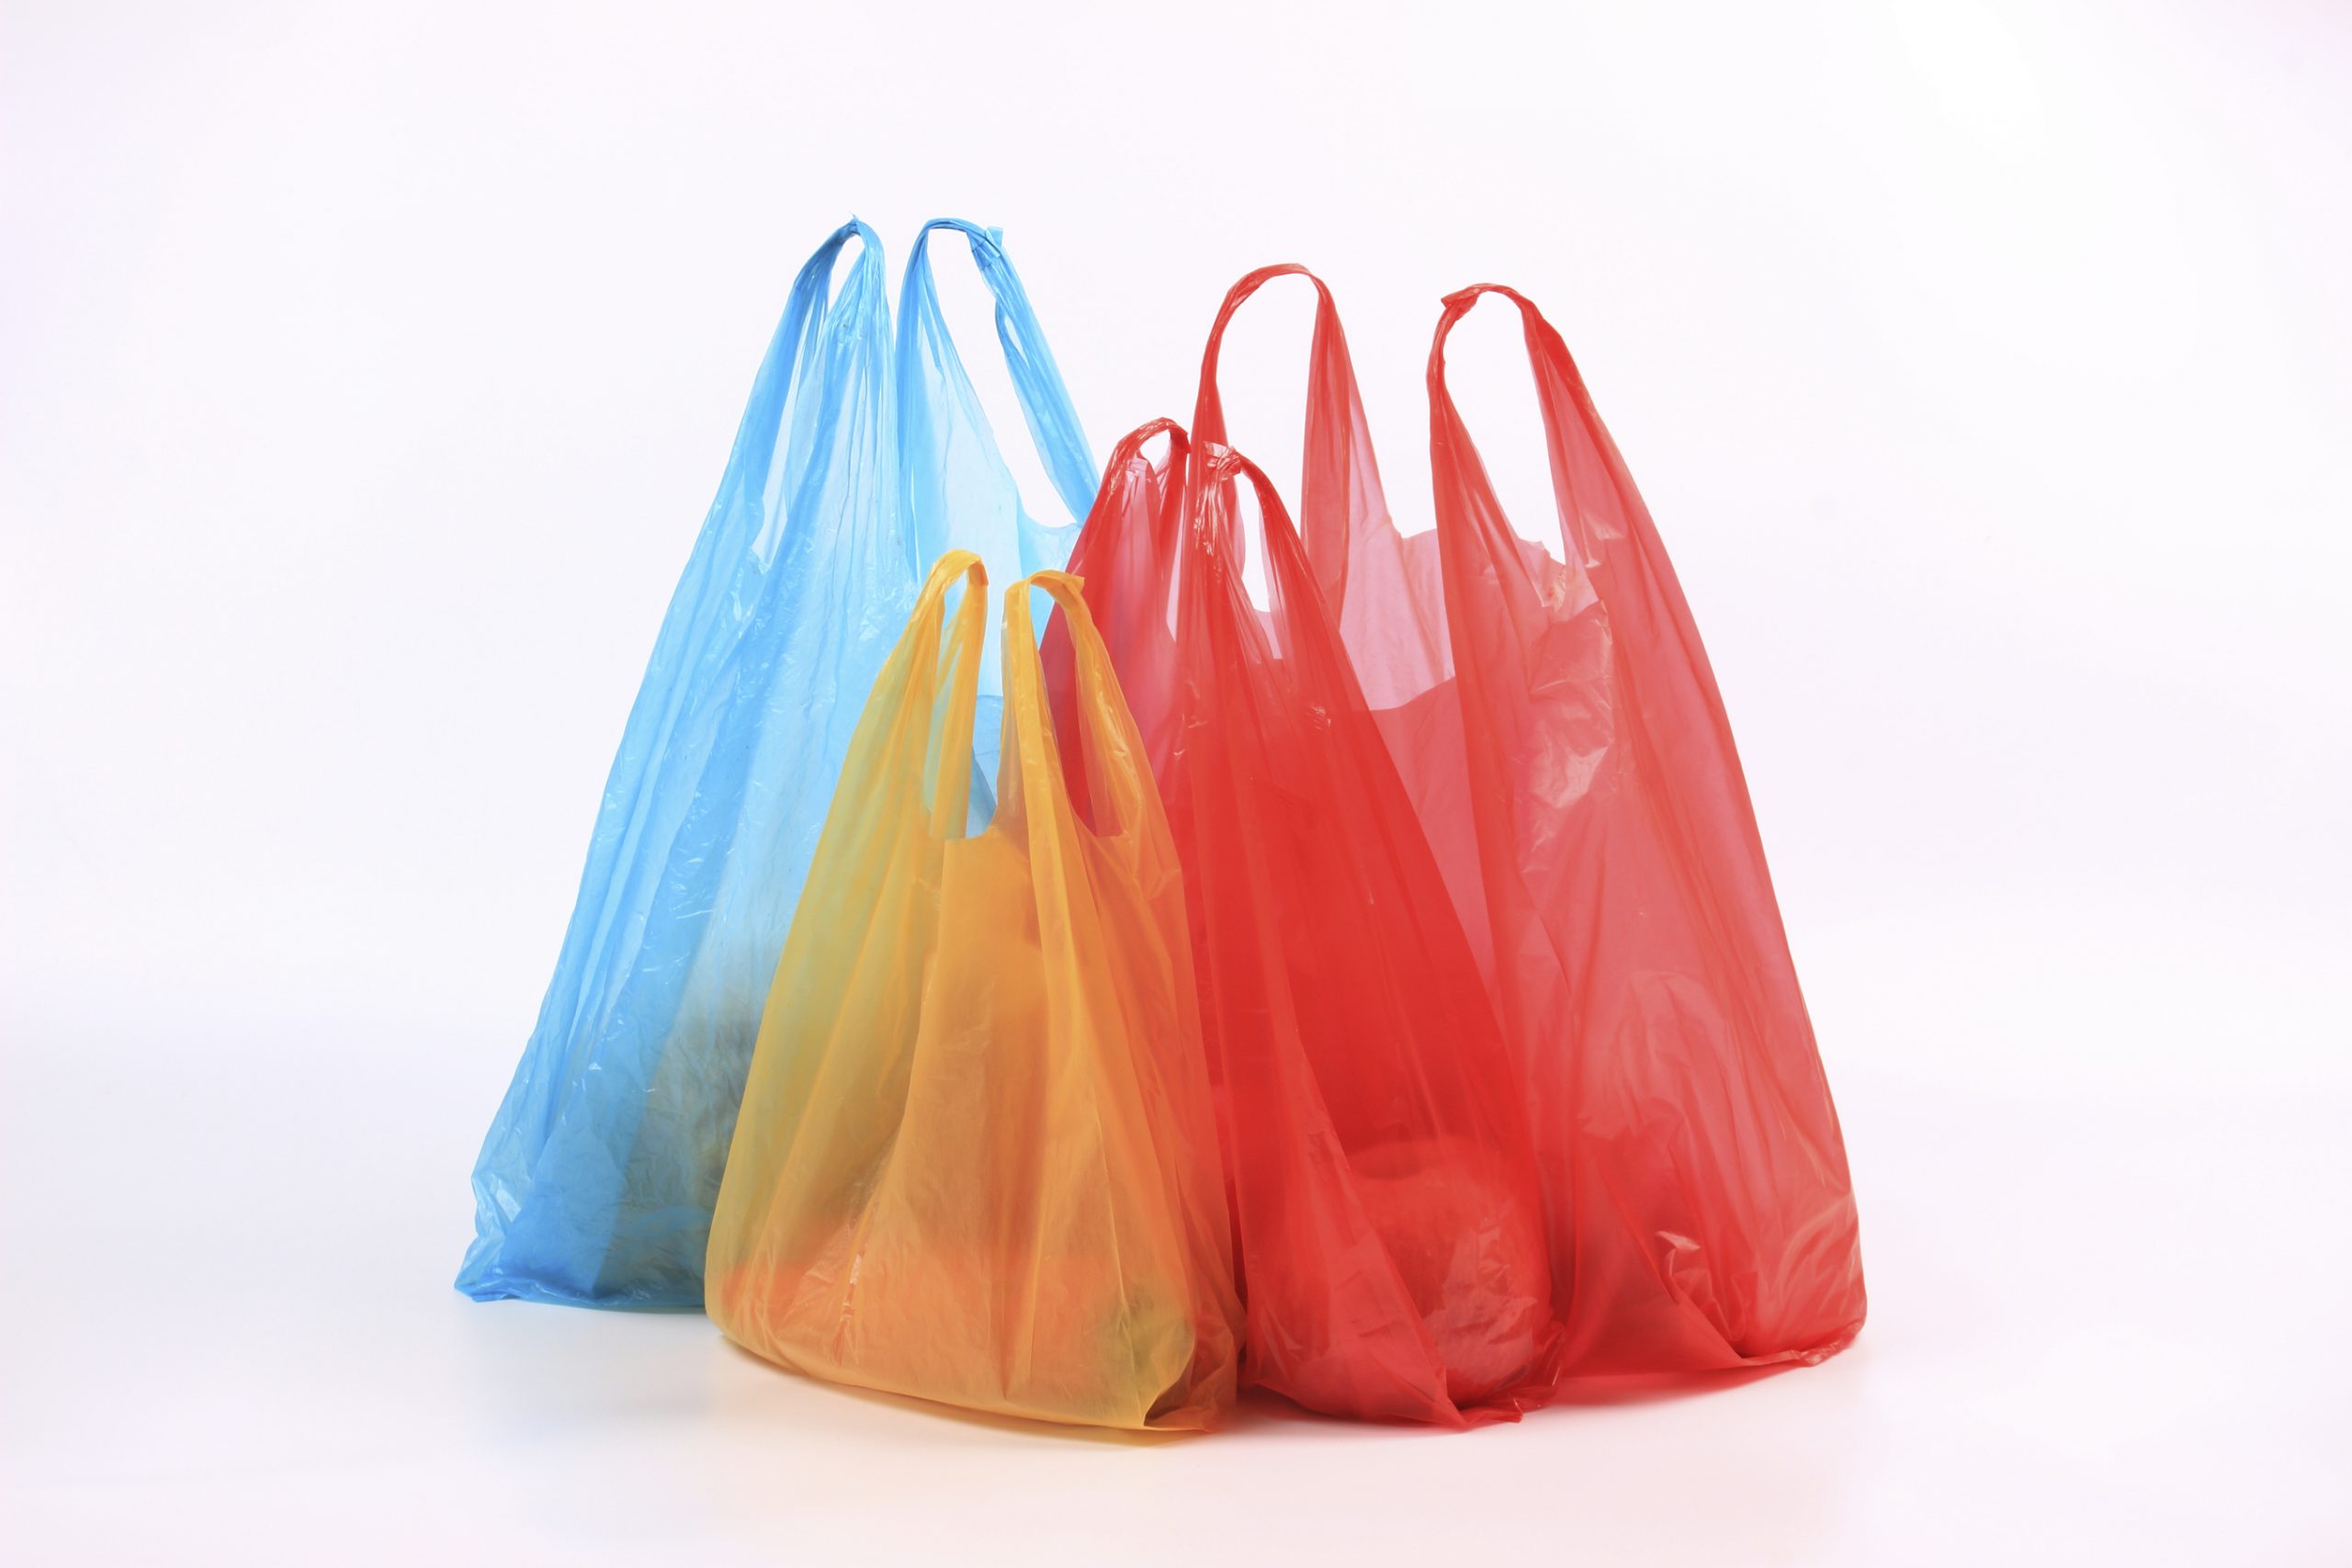 Journée sans sacs plastiques : où en est-on de leur interdiction